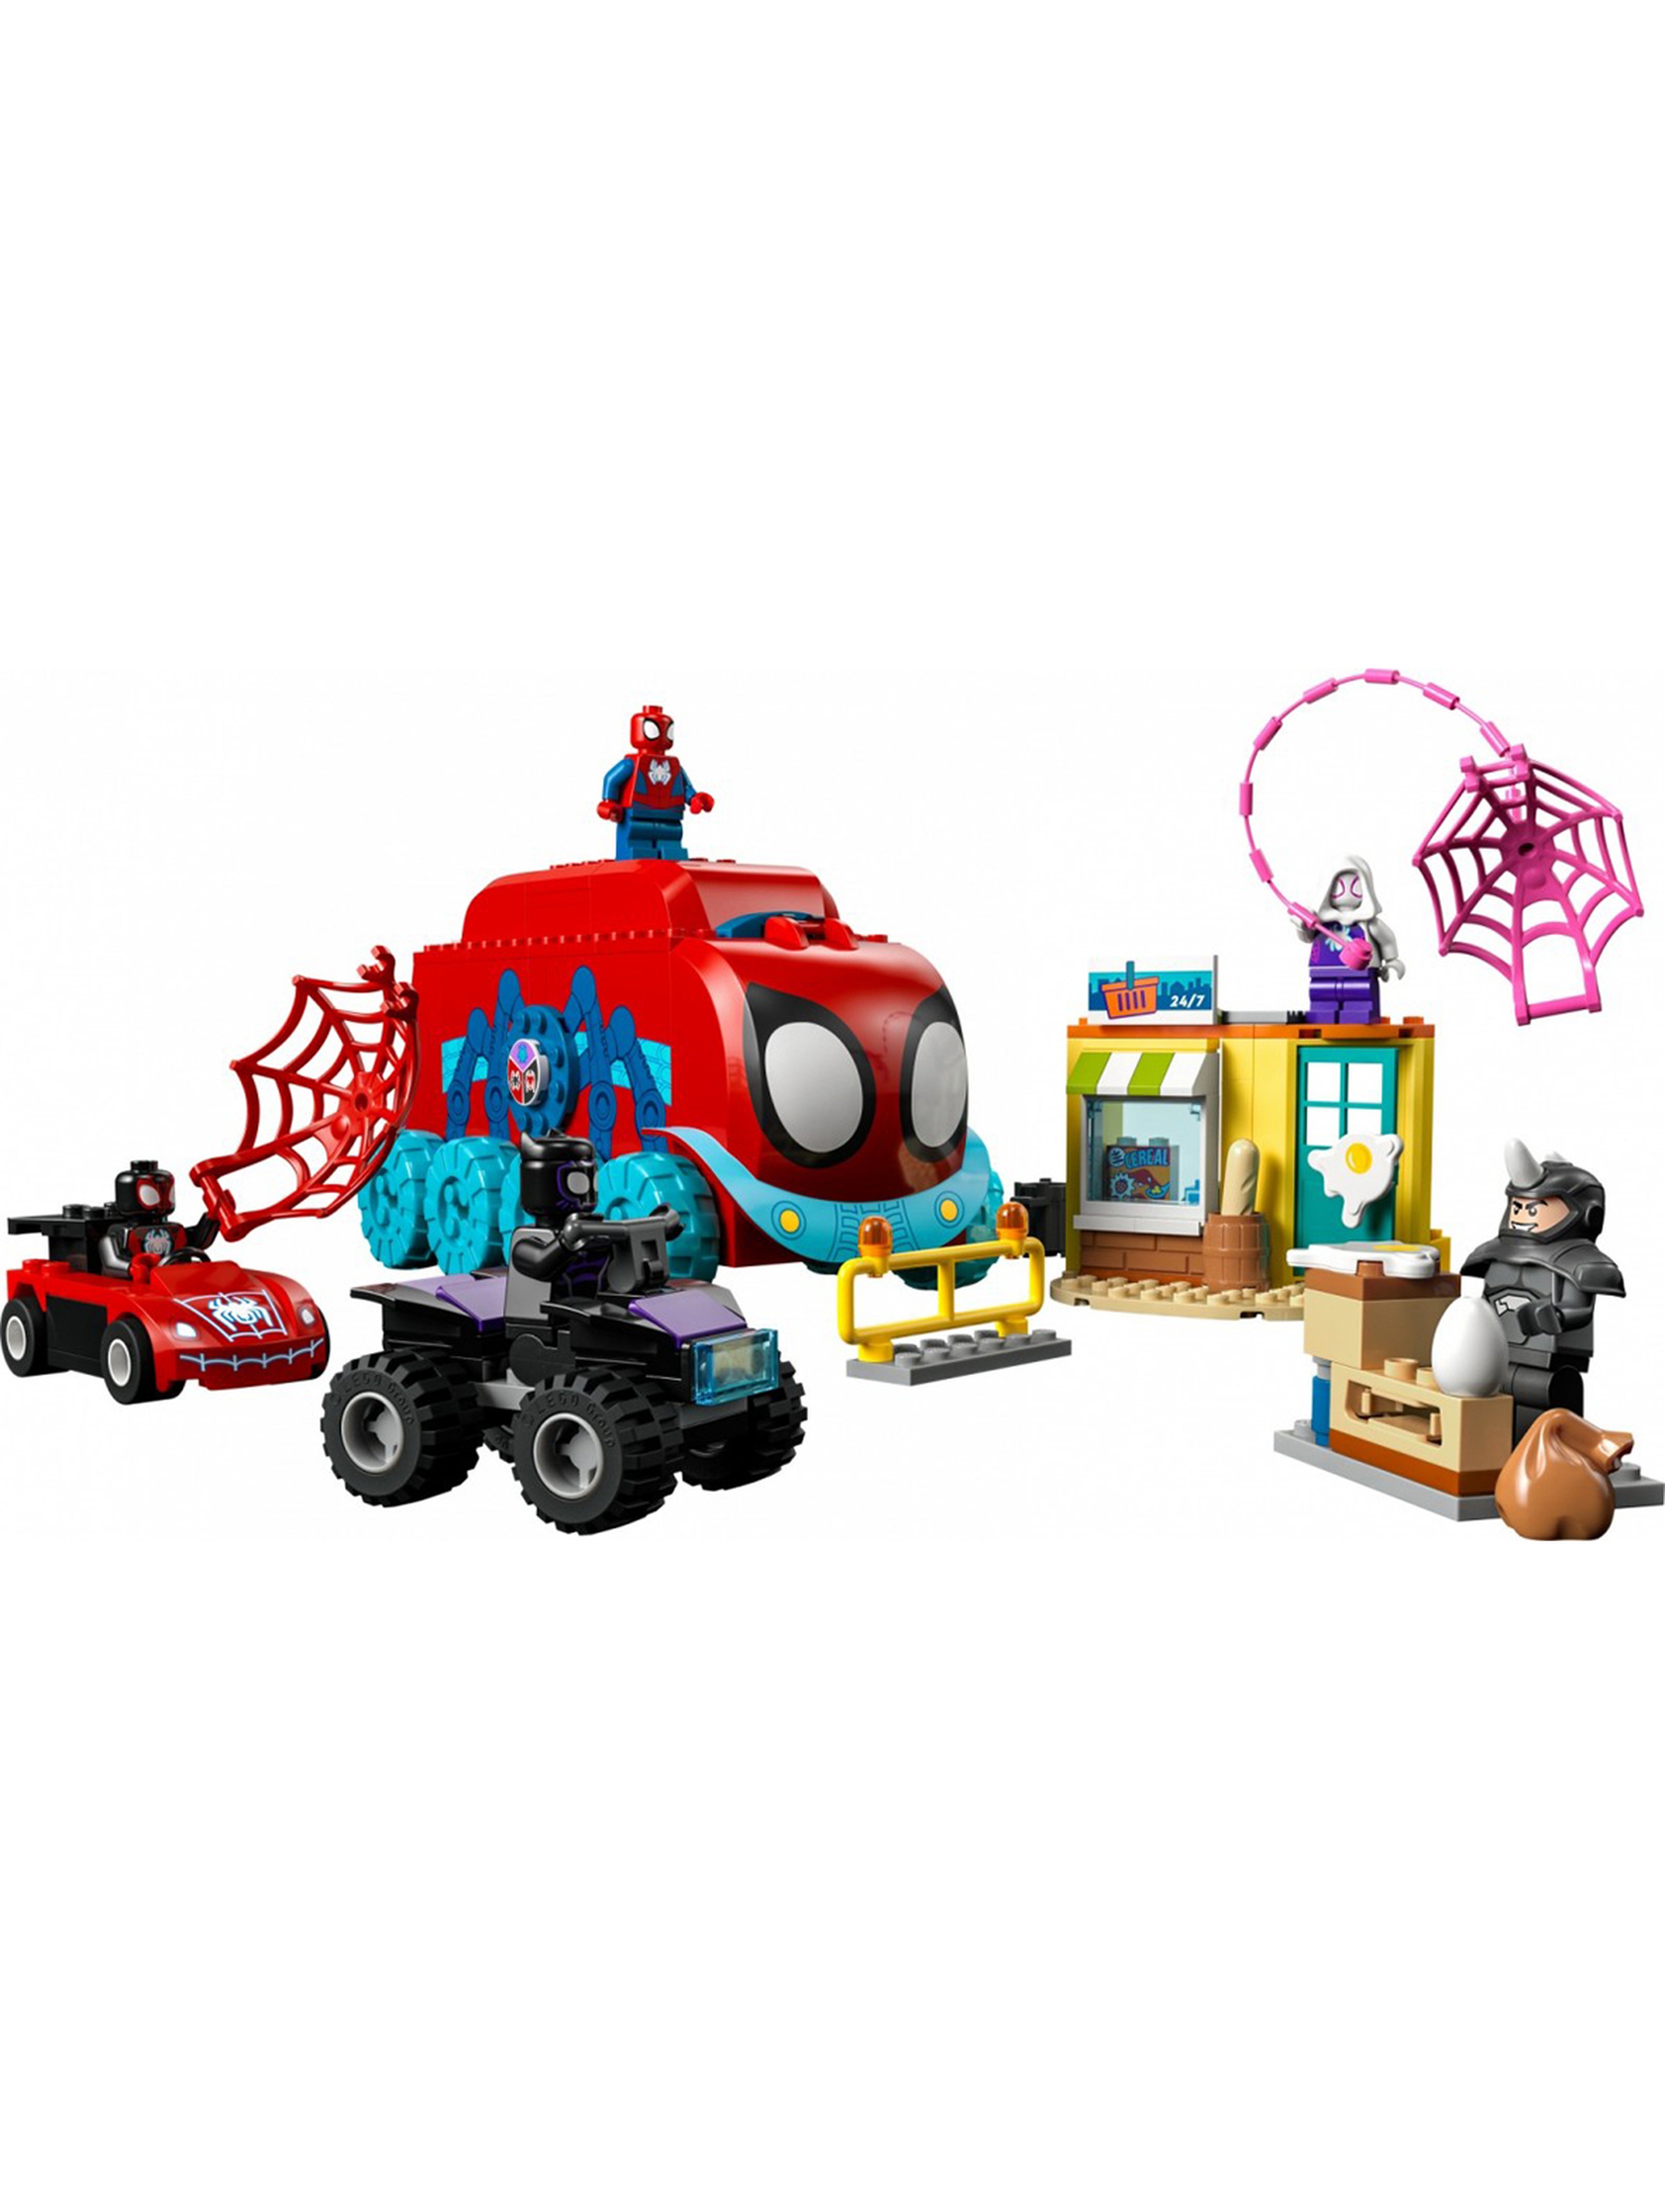 Klocki LEGO Super Heroes 10791 Mobilna kwatera drużyny Spider-Mana - 187 elementów, wiek 4 +